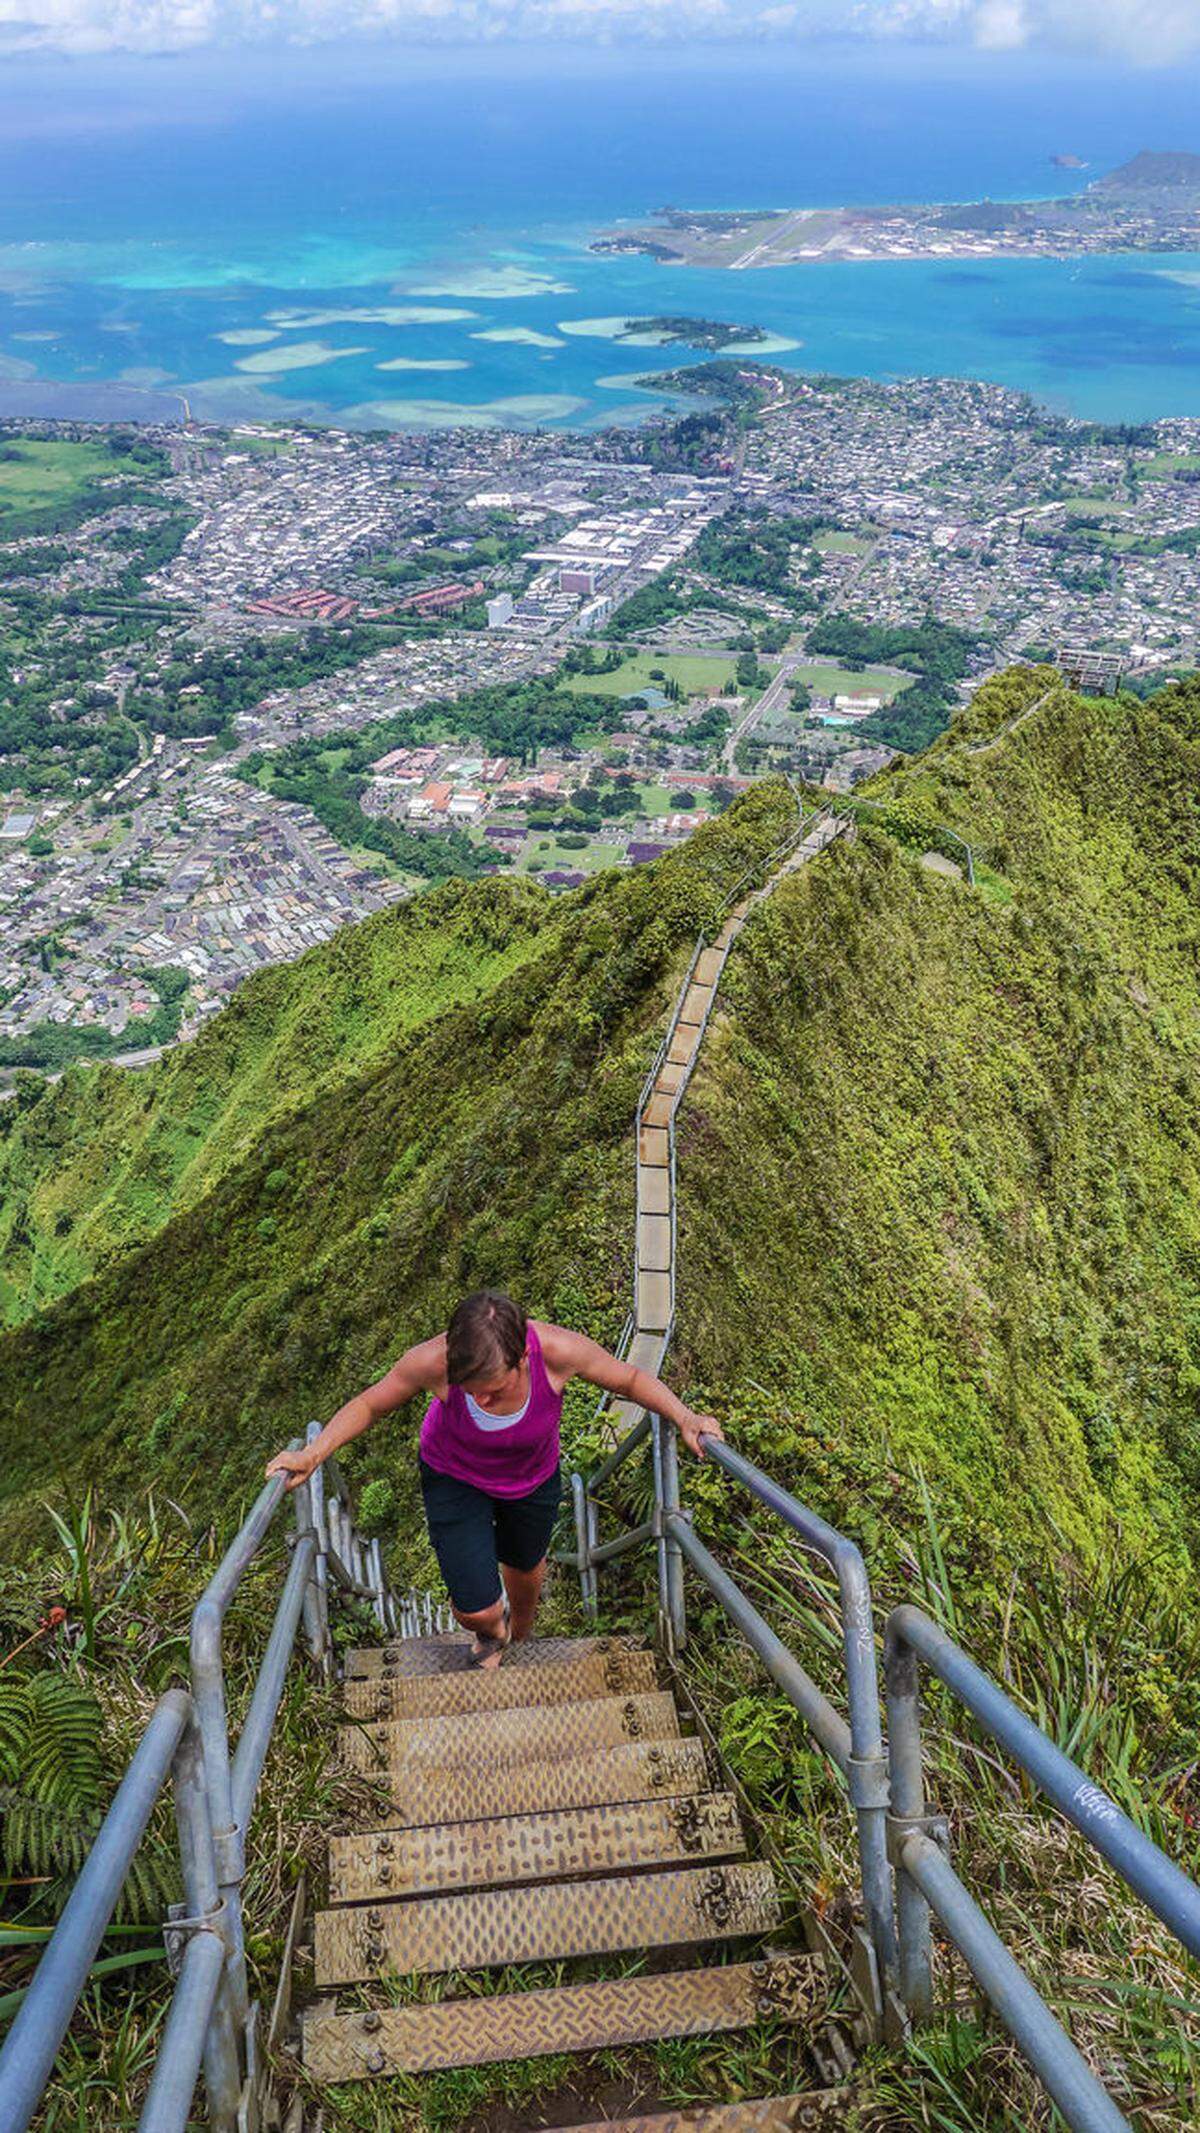 Die Haiku-Treppen, auch bekannt als Treppe zum Himmel, befinden sich auf der hawaiianischen Insel O'ahu. Insgesamt bestehen sie aus 3922 Stufen, die auf das Ko'olau-Gebirge führen. Eigentlich ist es verboten, die baufällige Treppe zu besteigen, Touristen und Einheimische halten sich jedoch nicht daran. Erwischen sollte man sich jedoch nicht lassen, sonst muss man mit einer Bußgeldstrafe rechnen.